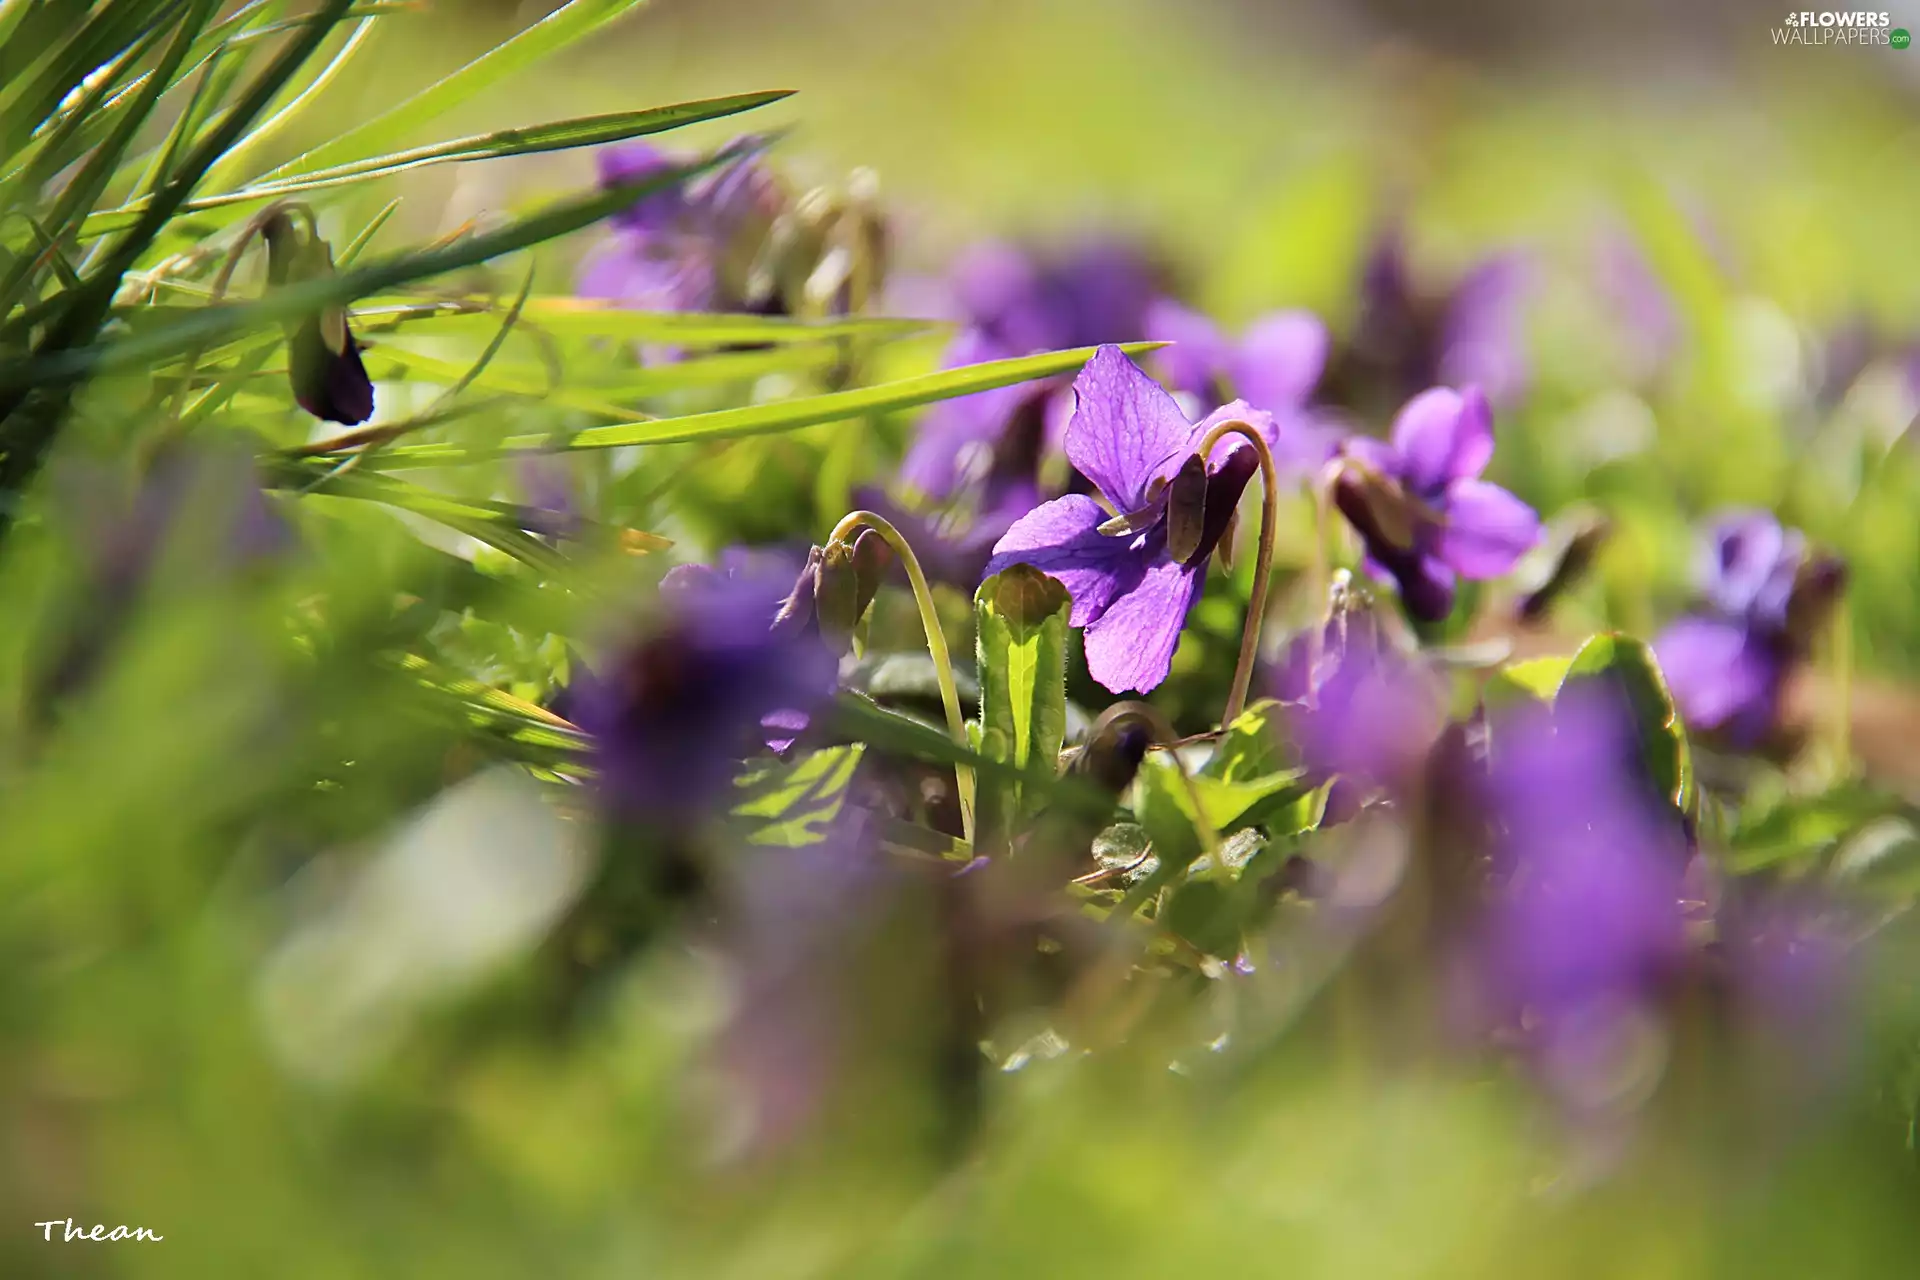 Spring, fragrant violets, grass